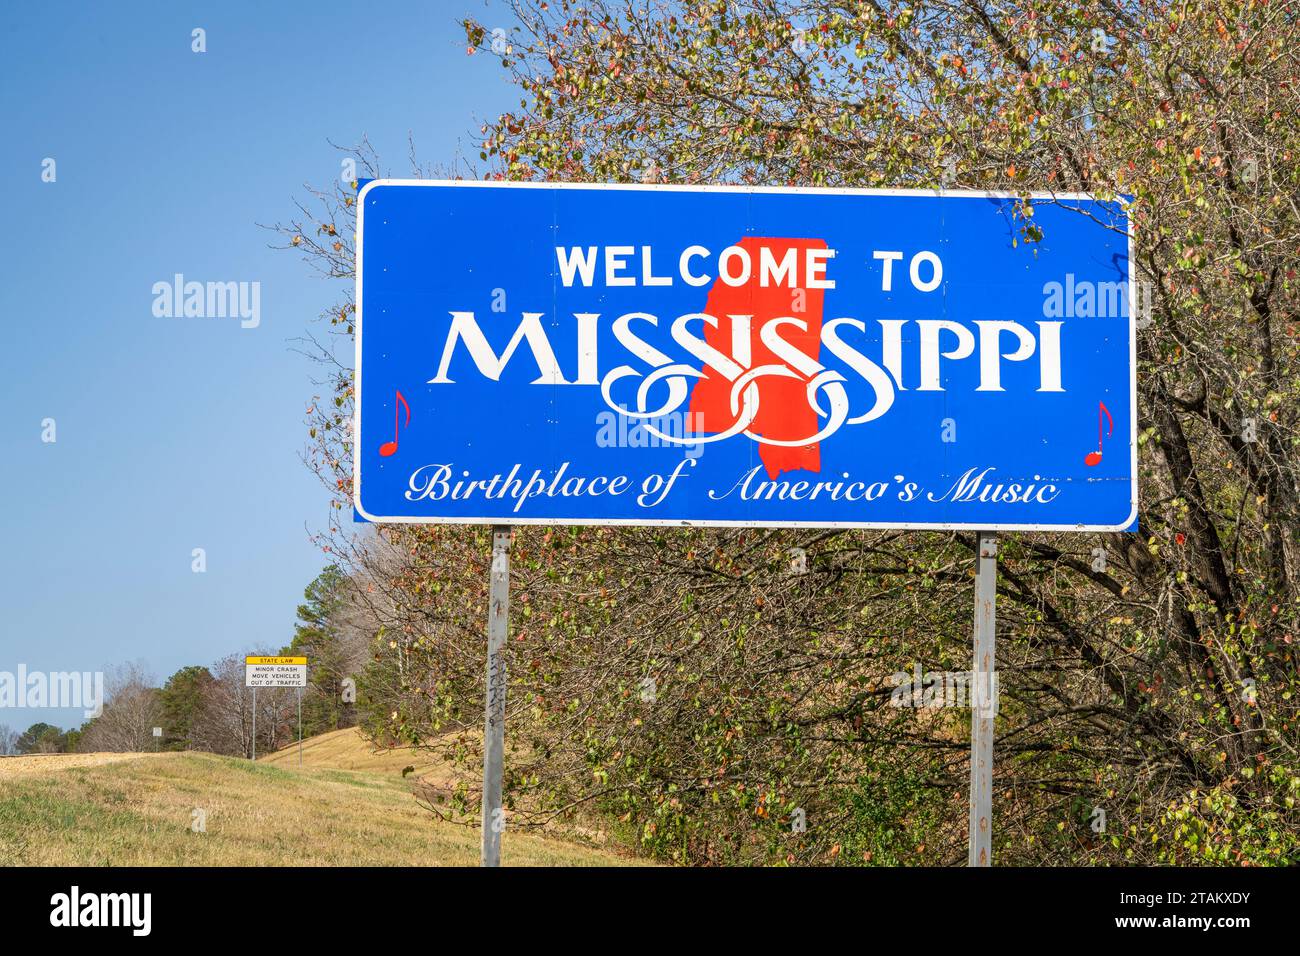 Willkommen in Mississippi, Geburtsort der amerikanischen Musik - Straßenschild an der Staatsgrenze zu Alabama in der Landschaft des späten Herbstes Stockfoto